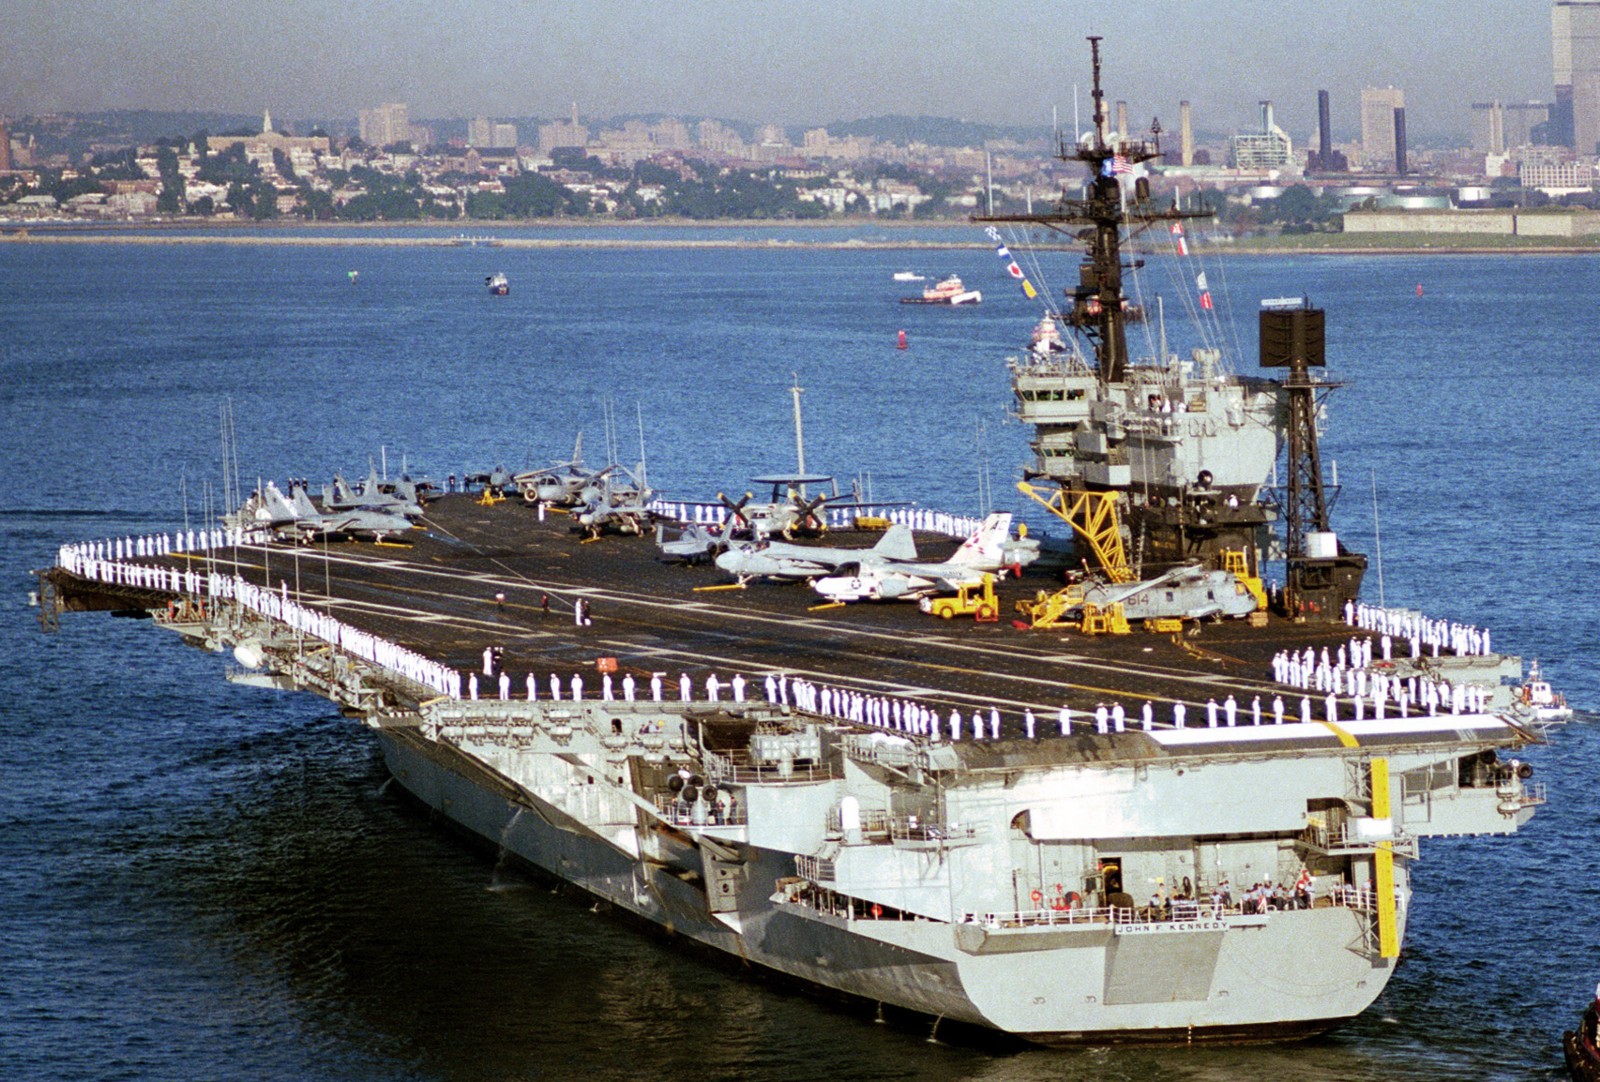 cv-67 uss john f. kennedy aircraft carrier us navy boston massachusetts 1987 107